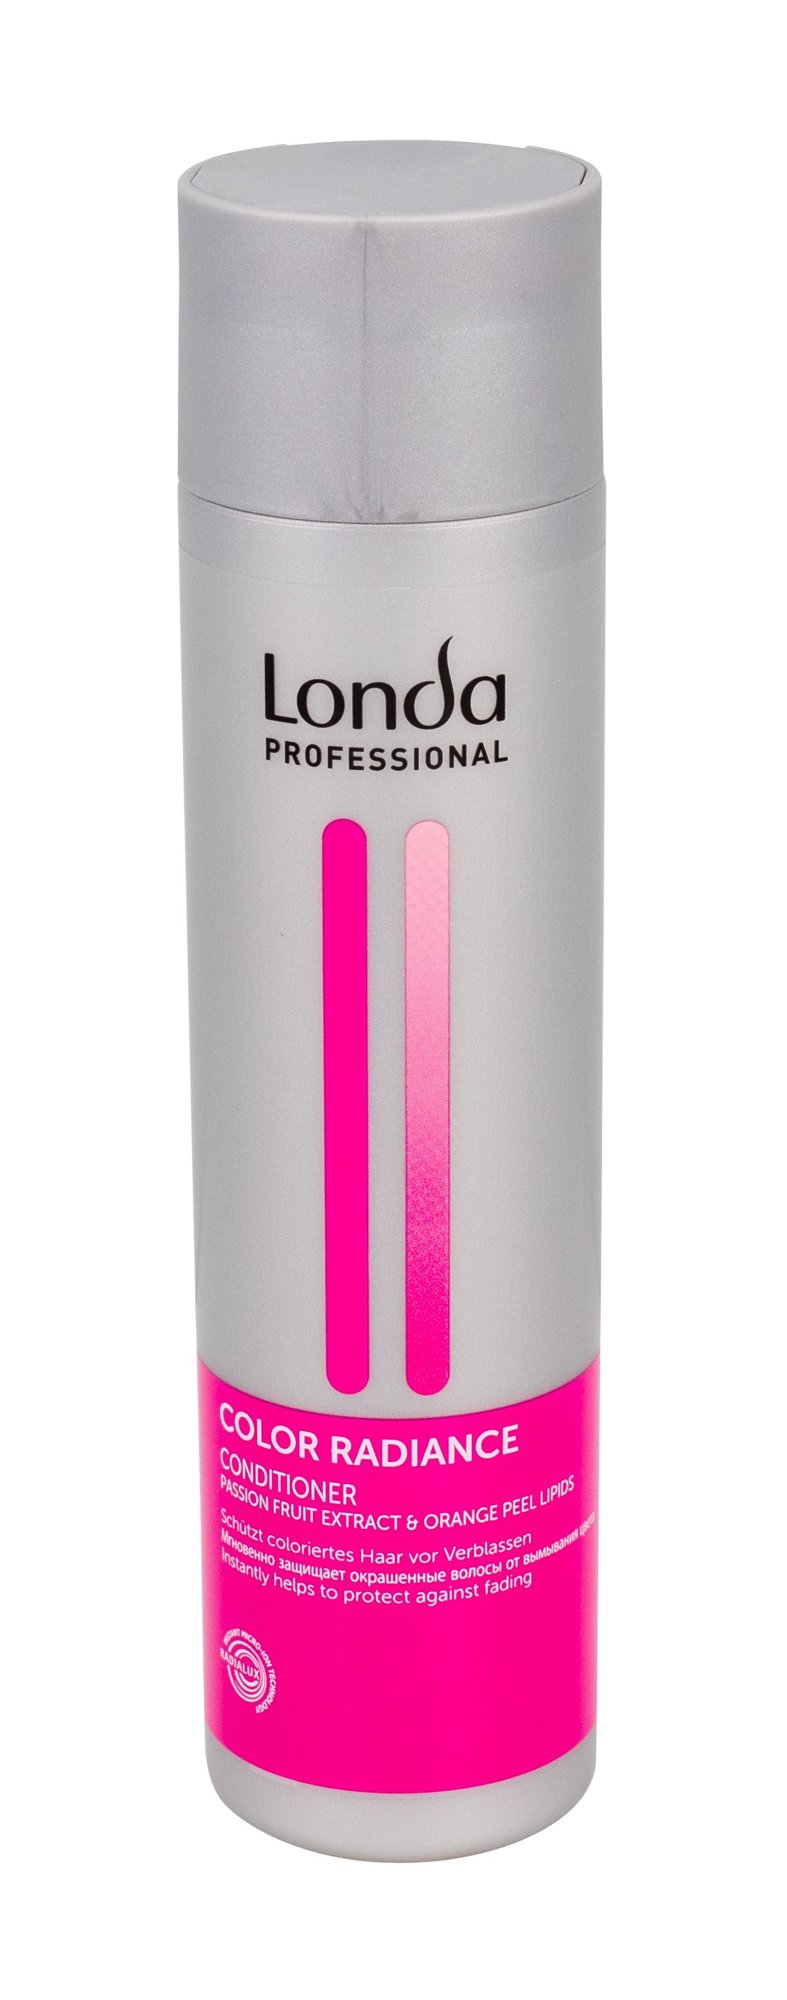 Londa Professional Color Radiance 250ml kondicionierius